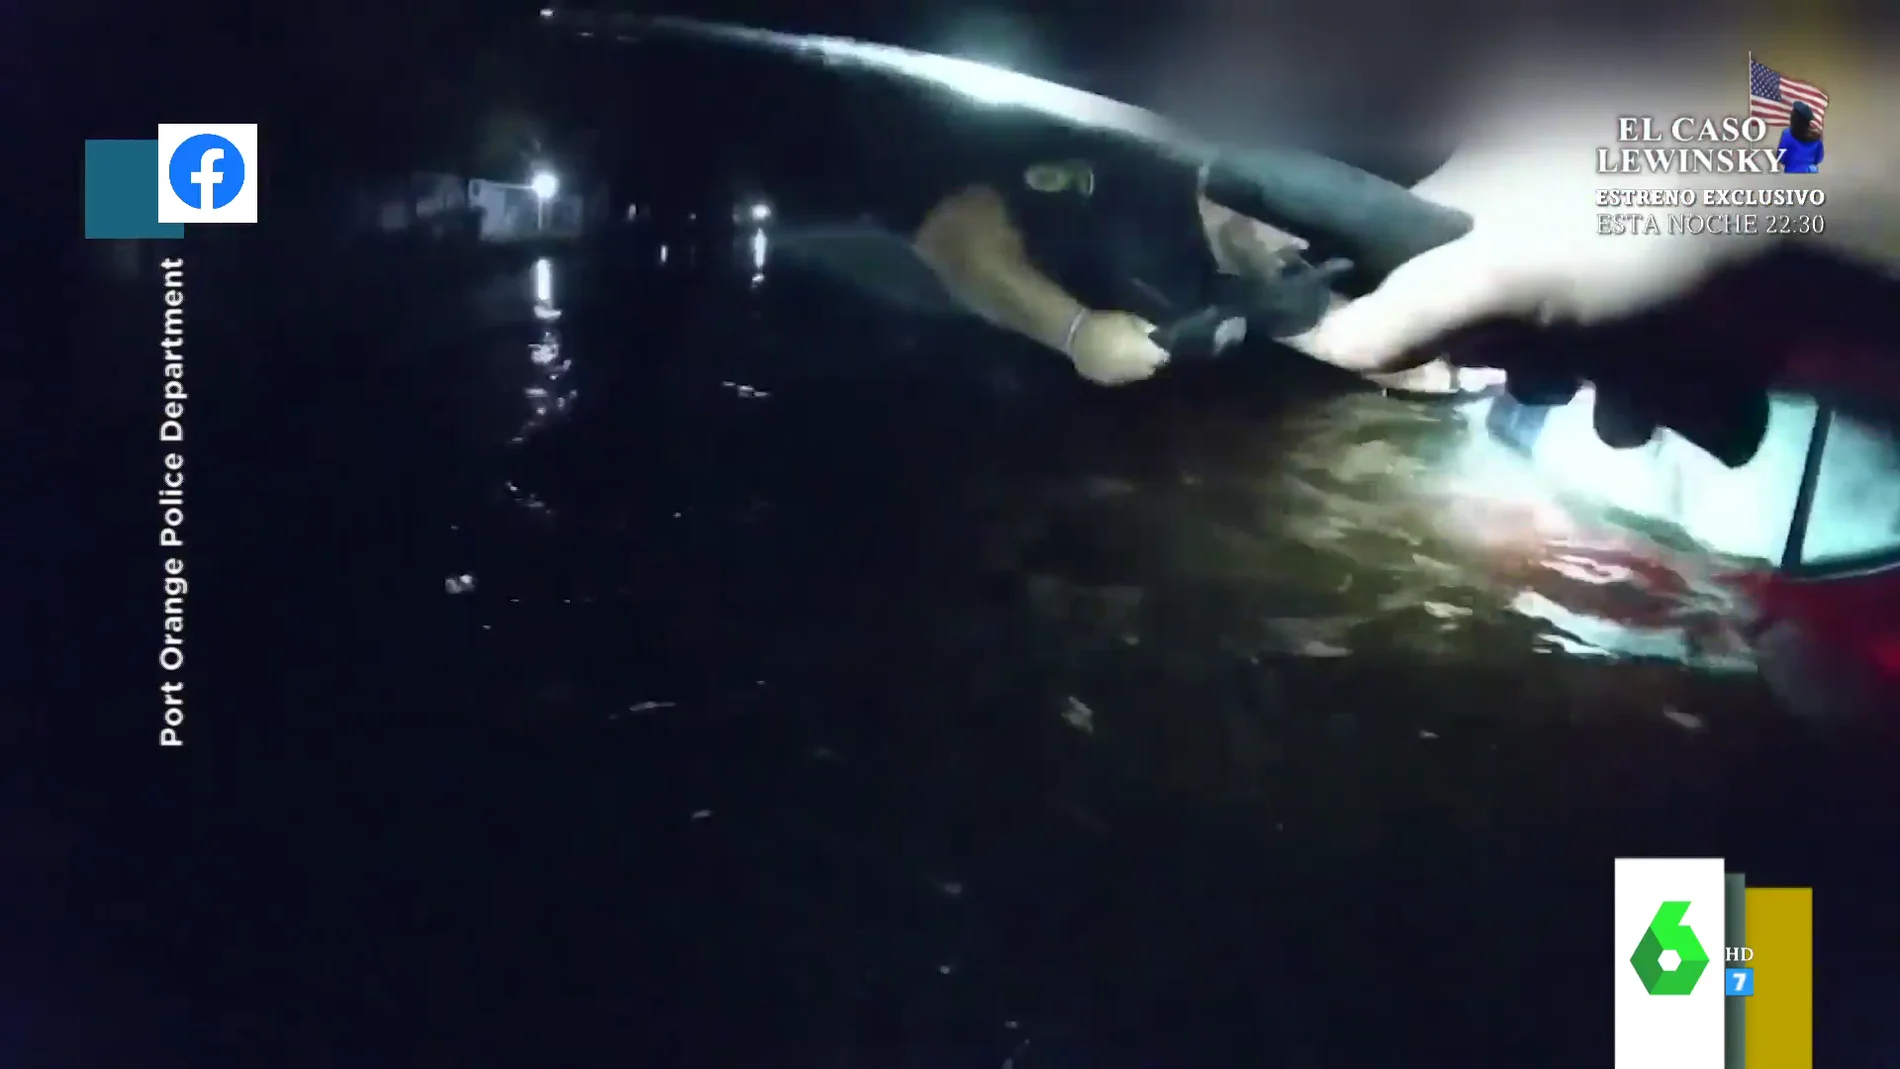 El angustioso rescate entre gritos de una mujer atrapada en un coche inundado